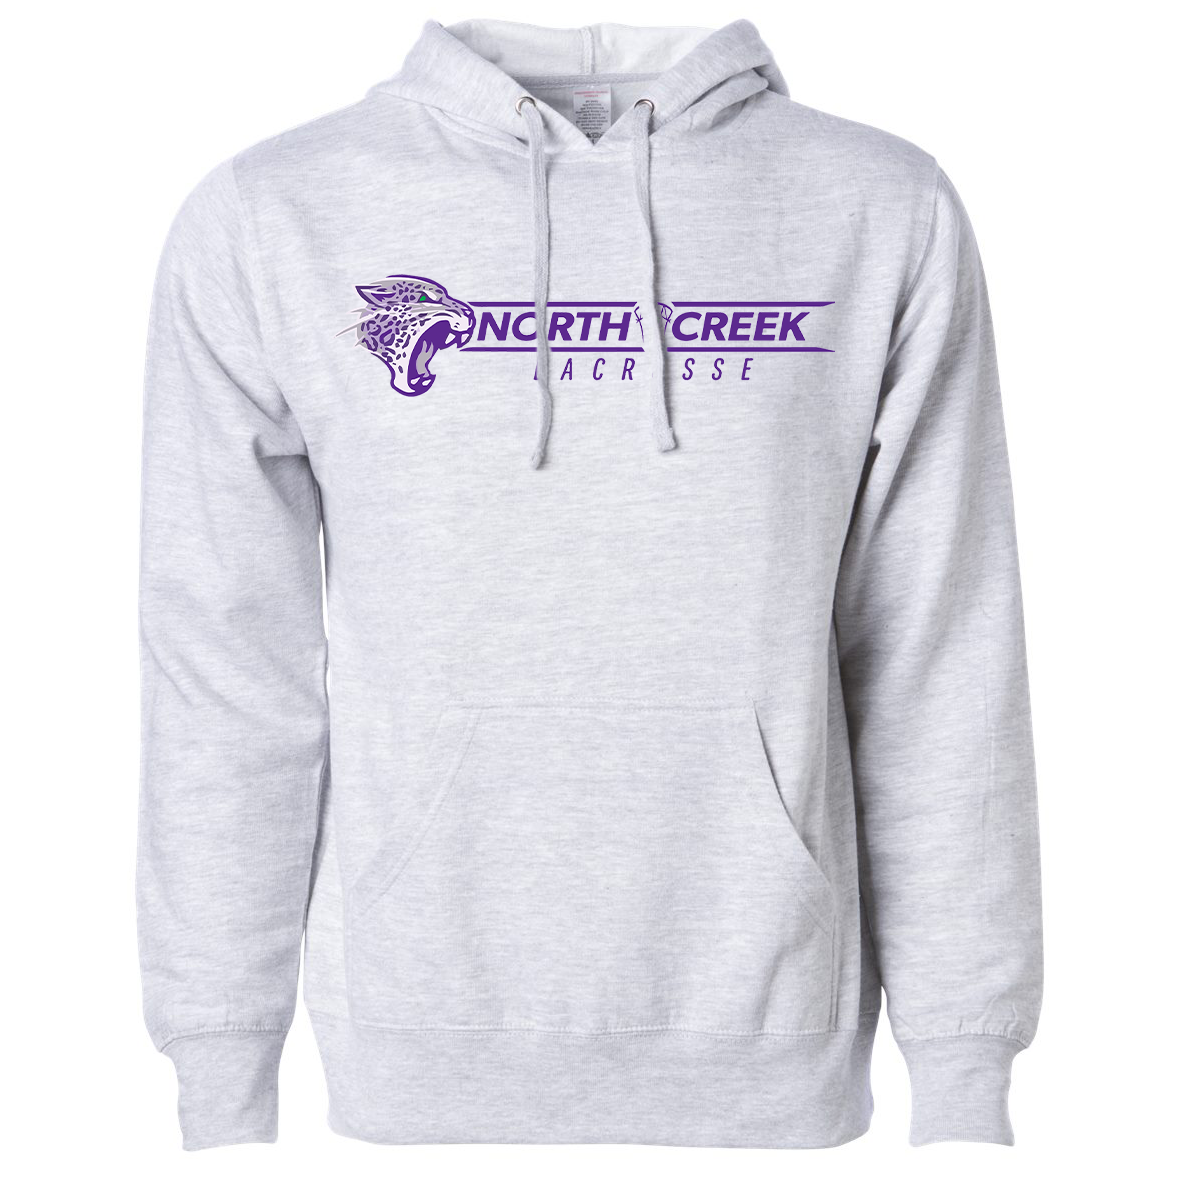 North Creek Lacrosse Sweatshirt